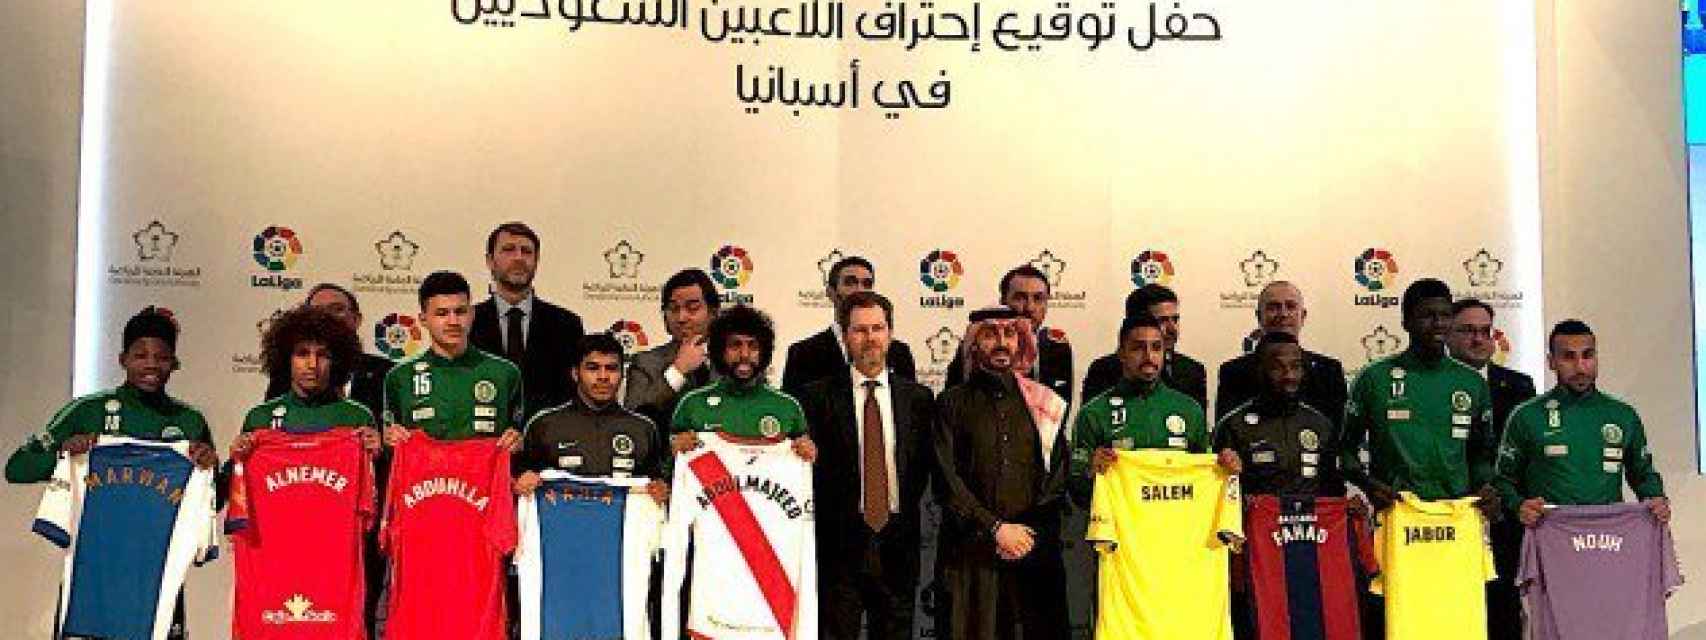 Foto de familia de la presentación de los jugadores saudíes en los equipos españoles.